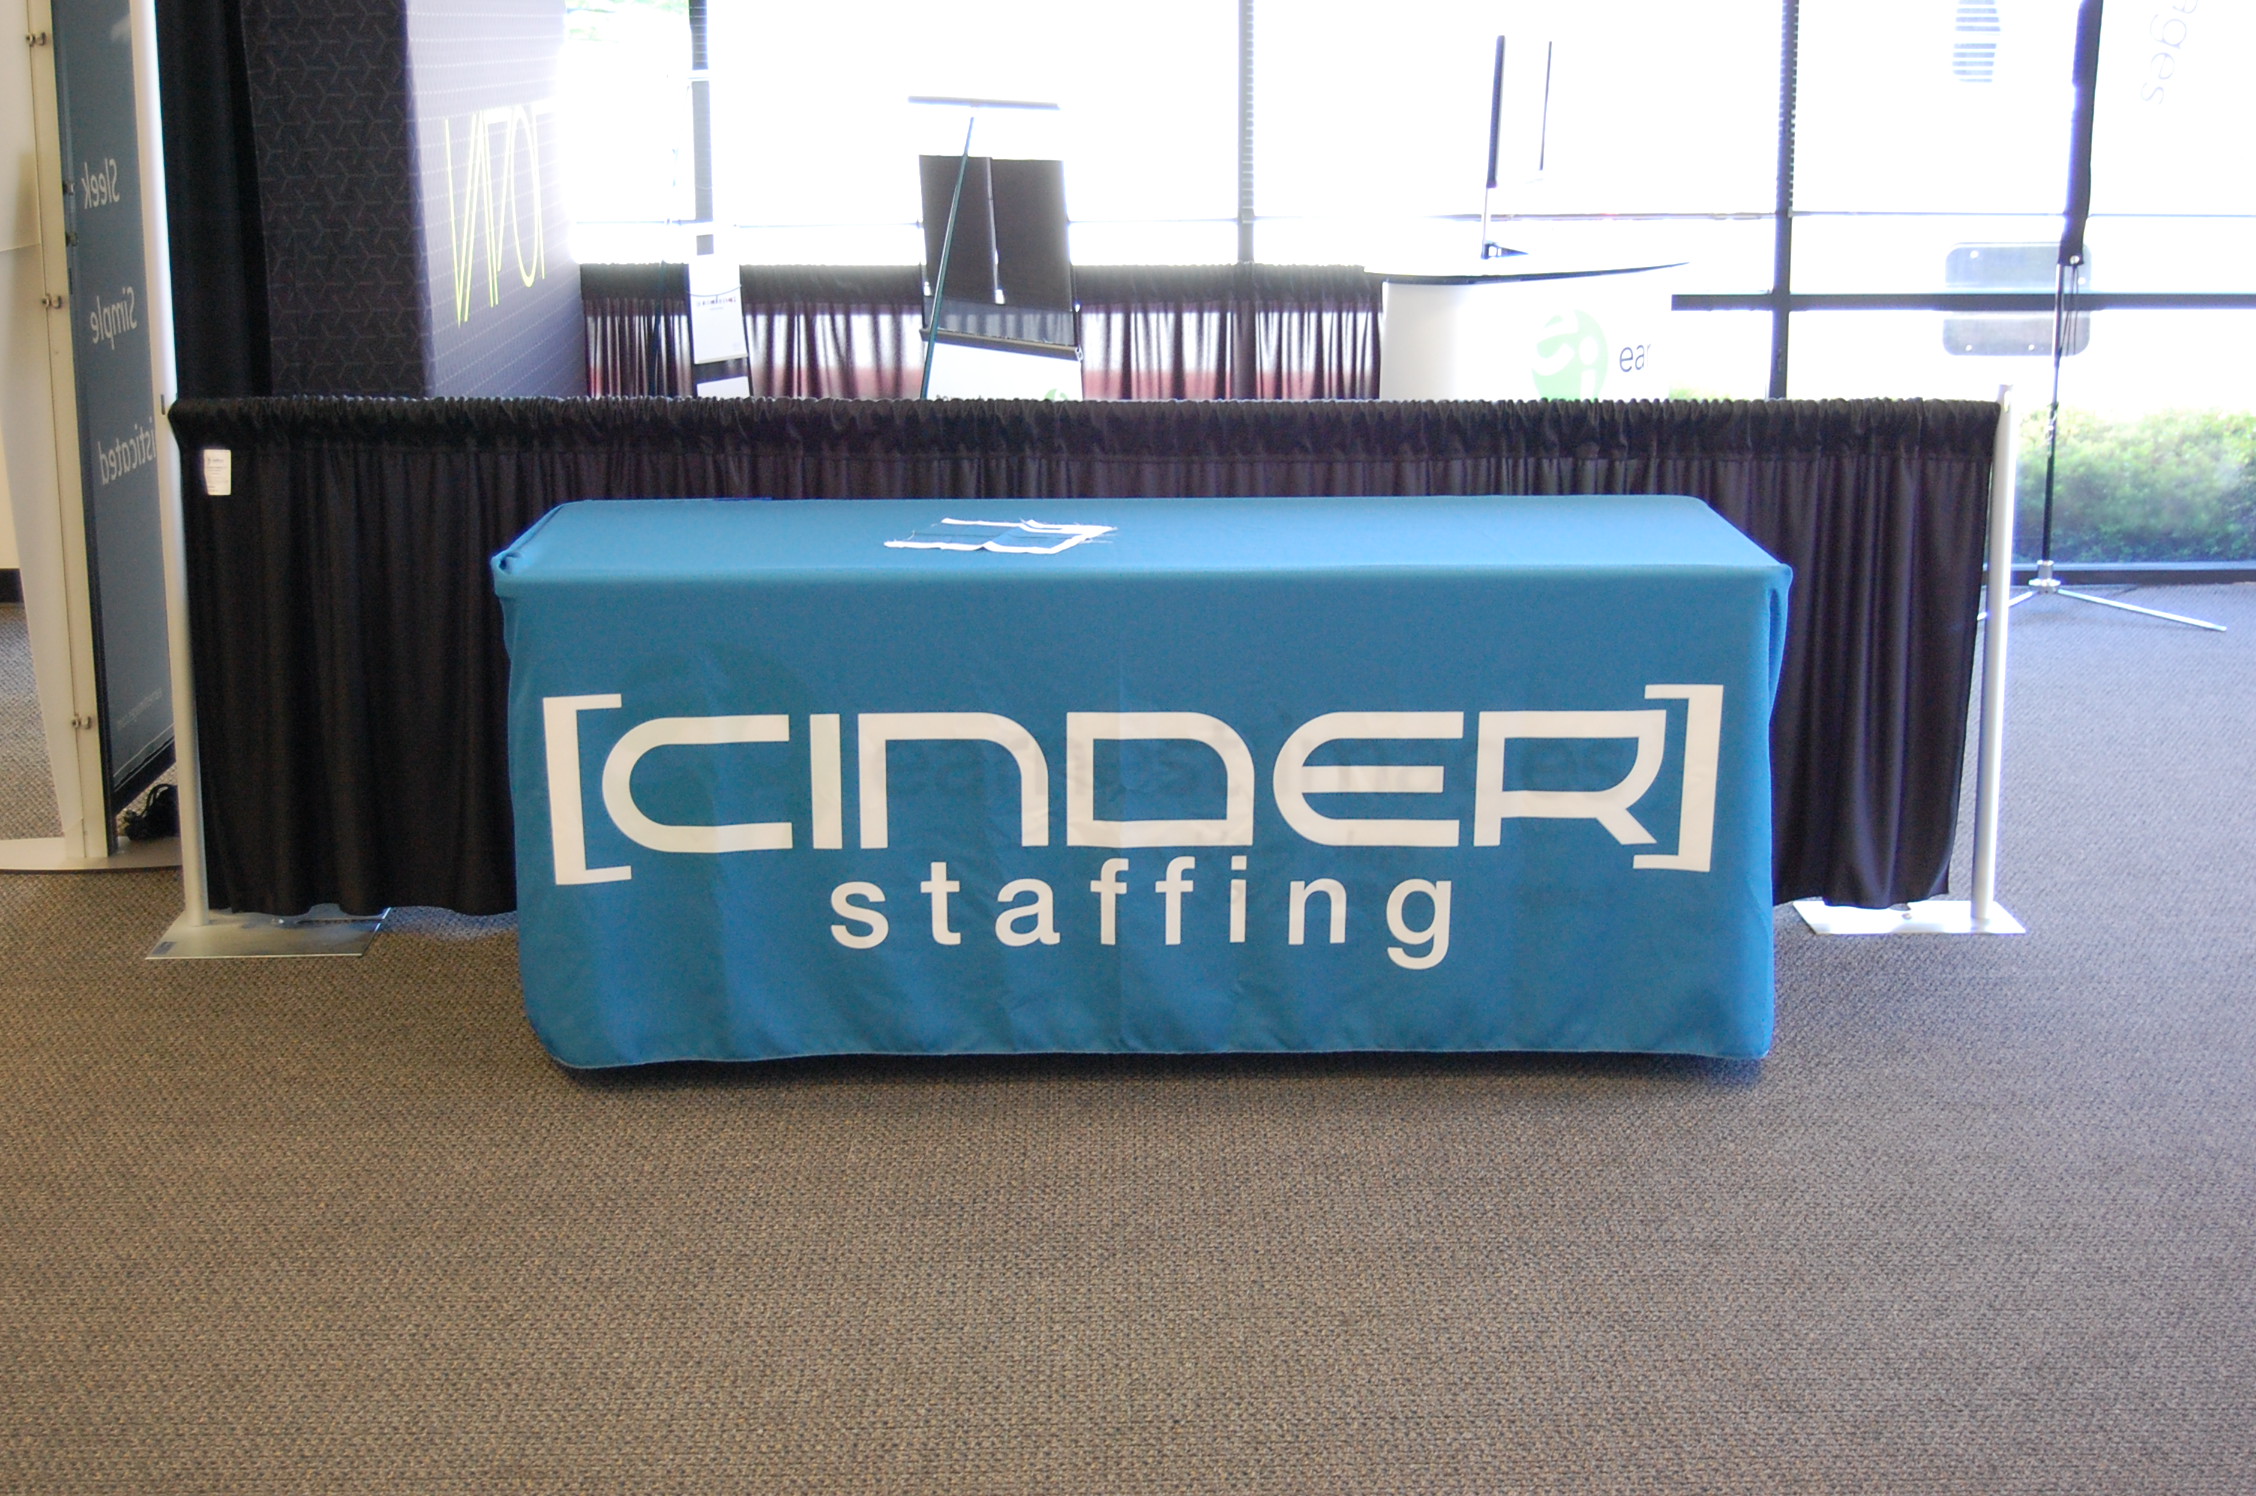 Cinder Staffing